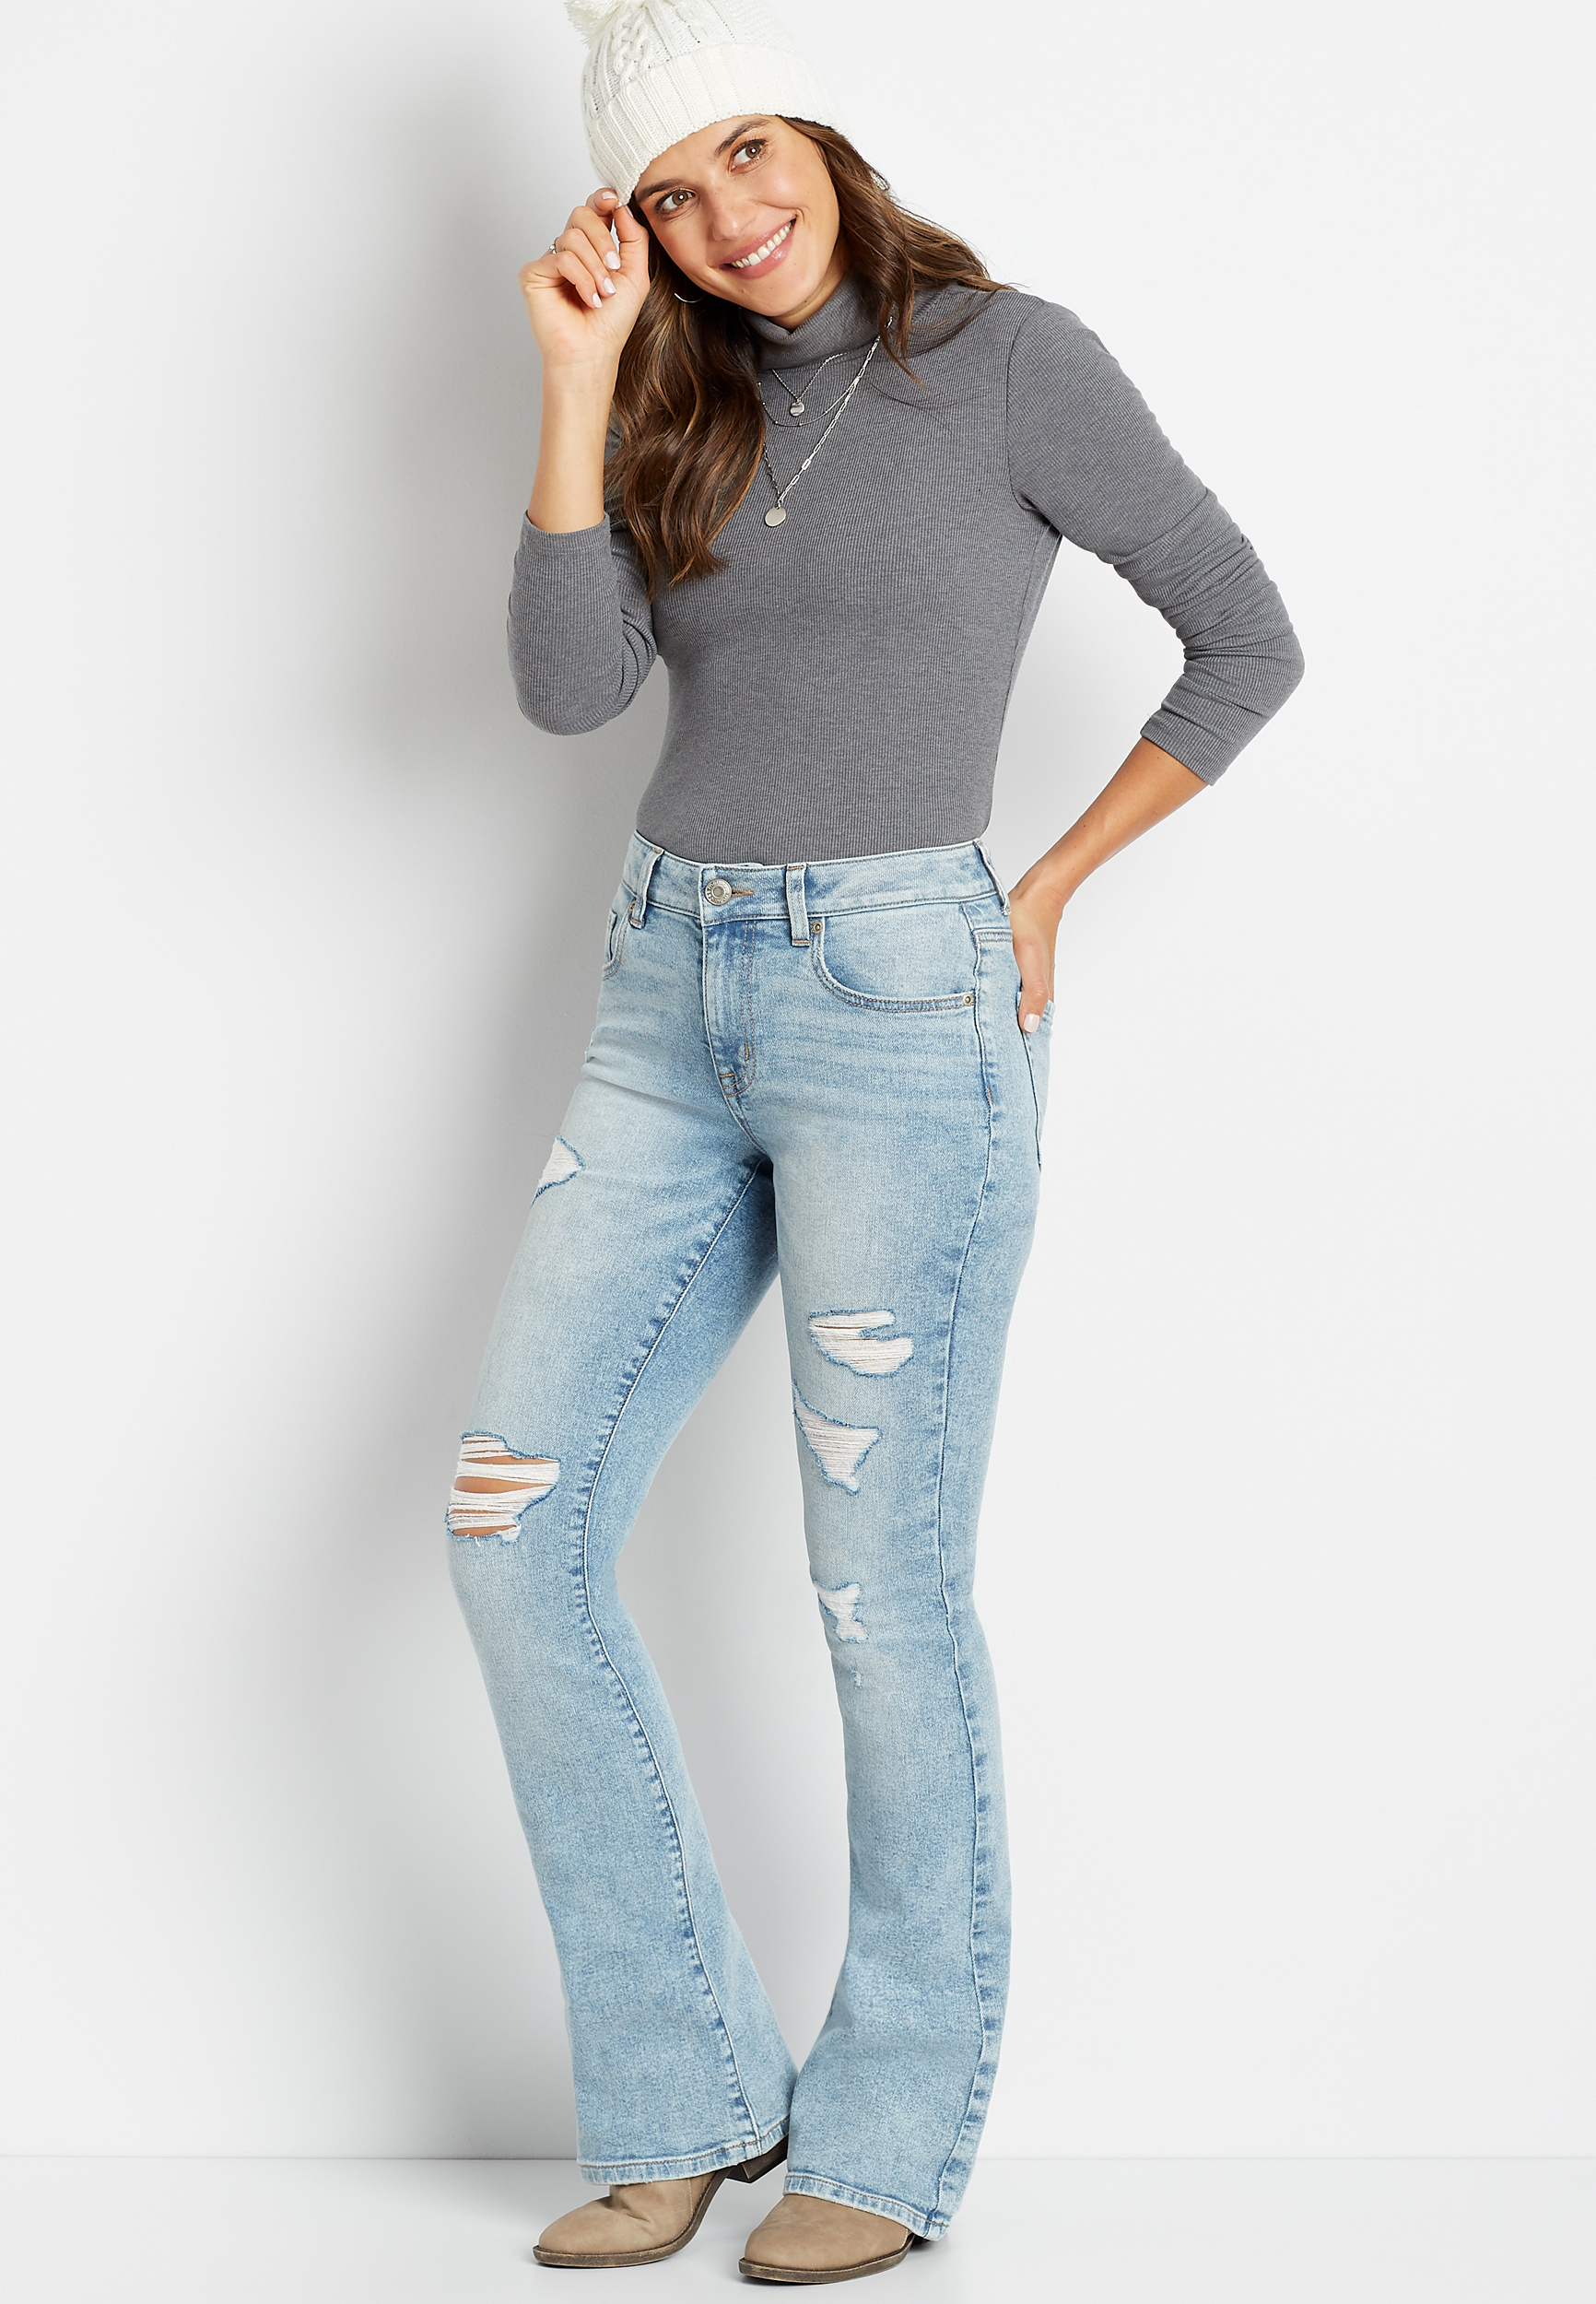 women's size 18 jeans